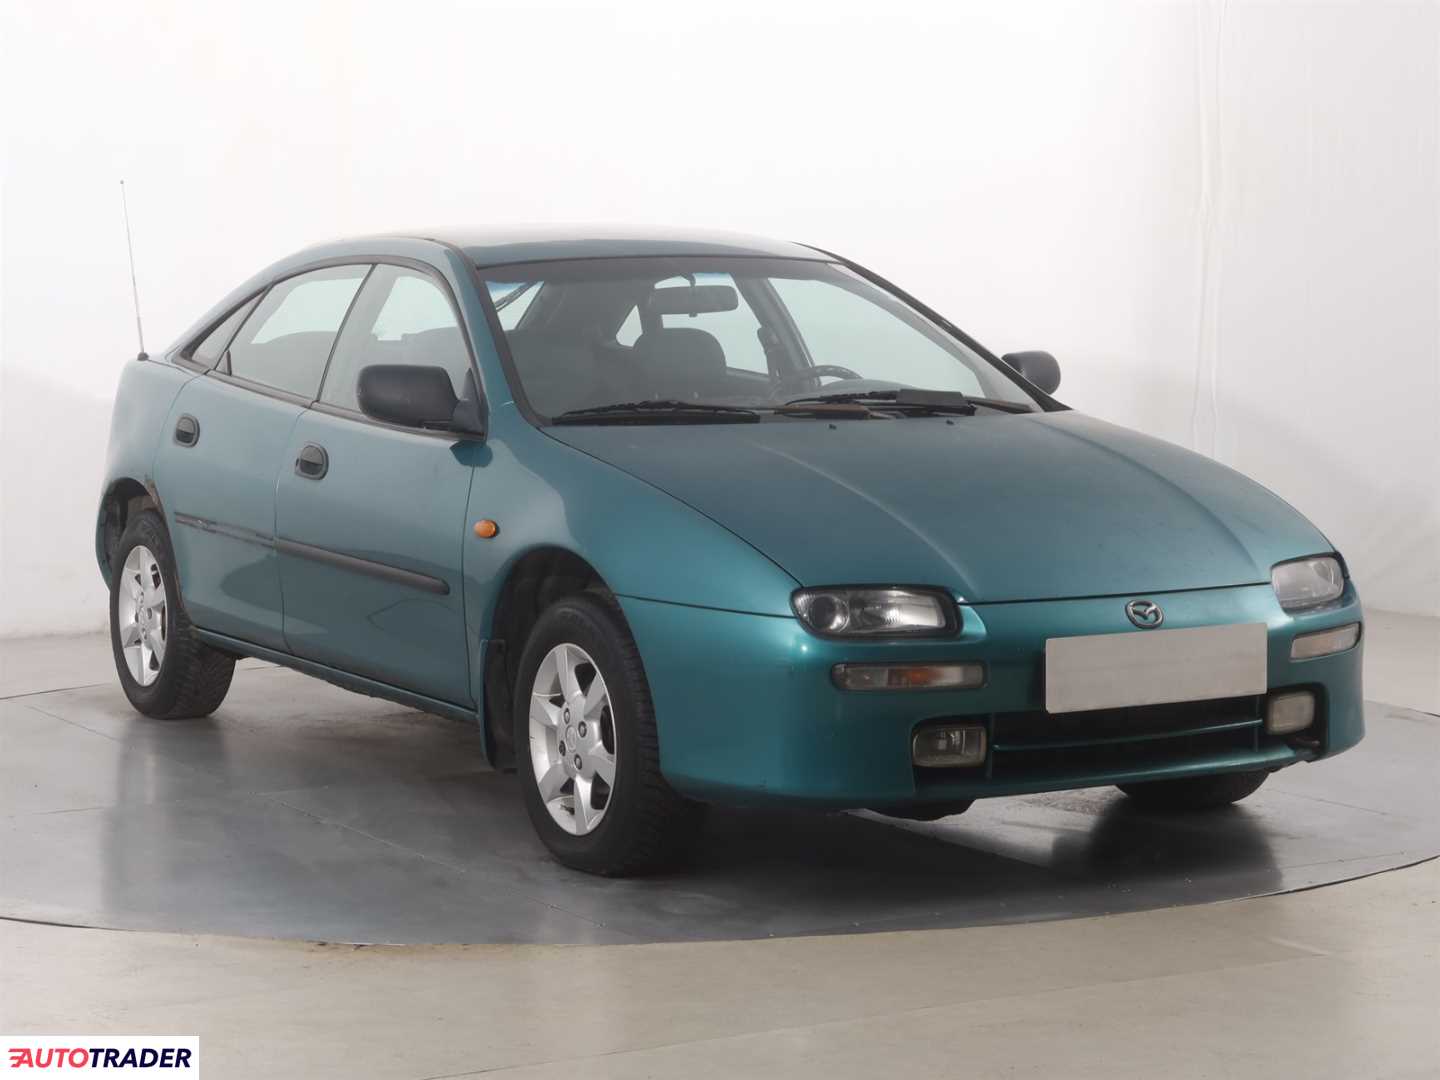 Mazda 323 1998 1.5 87 KM